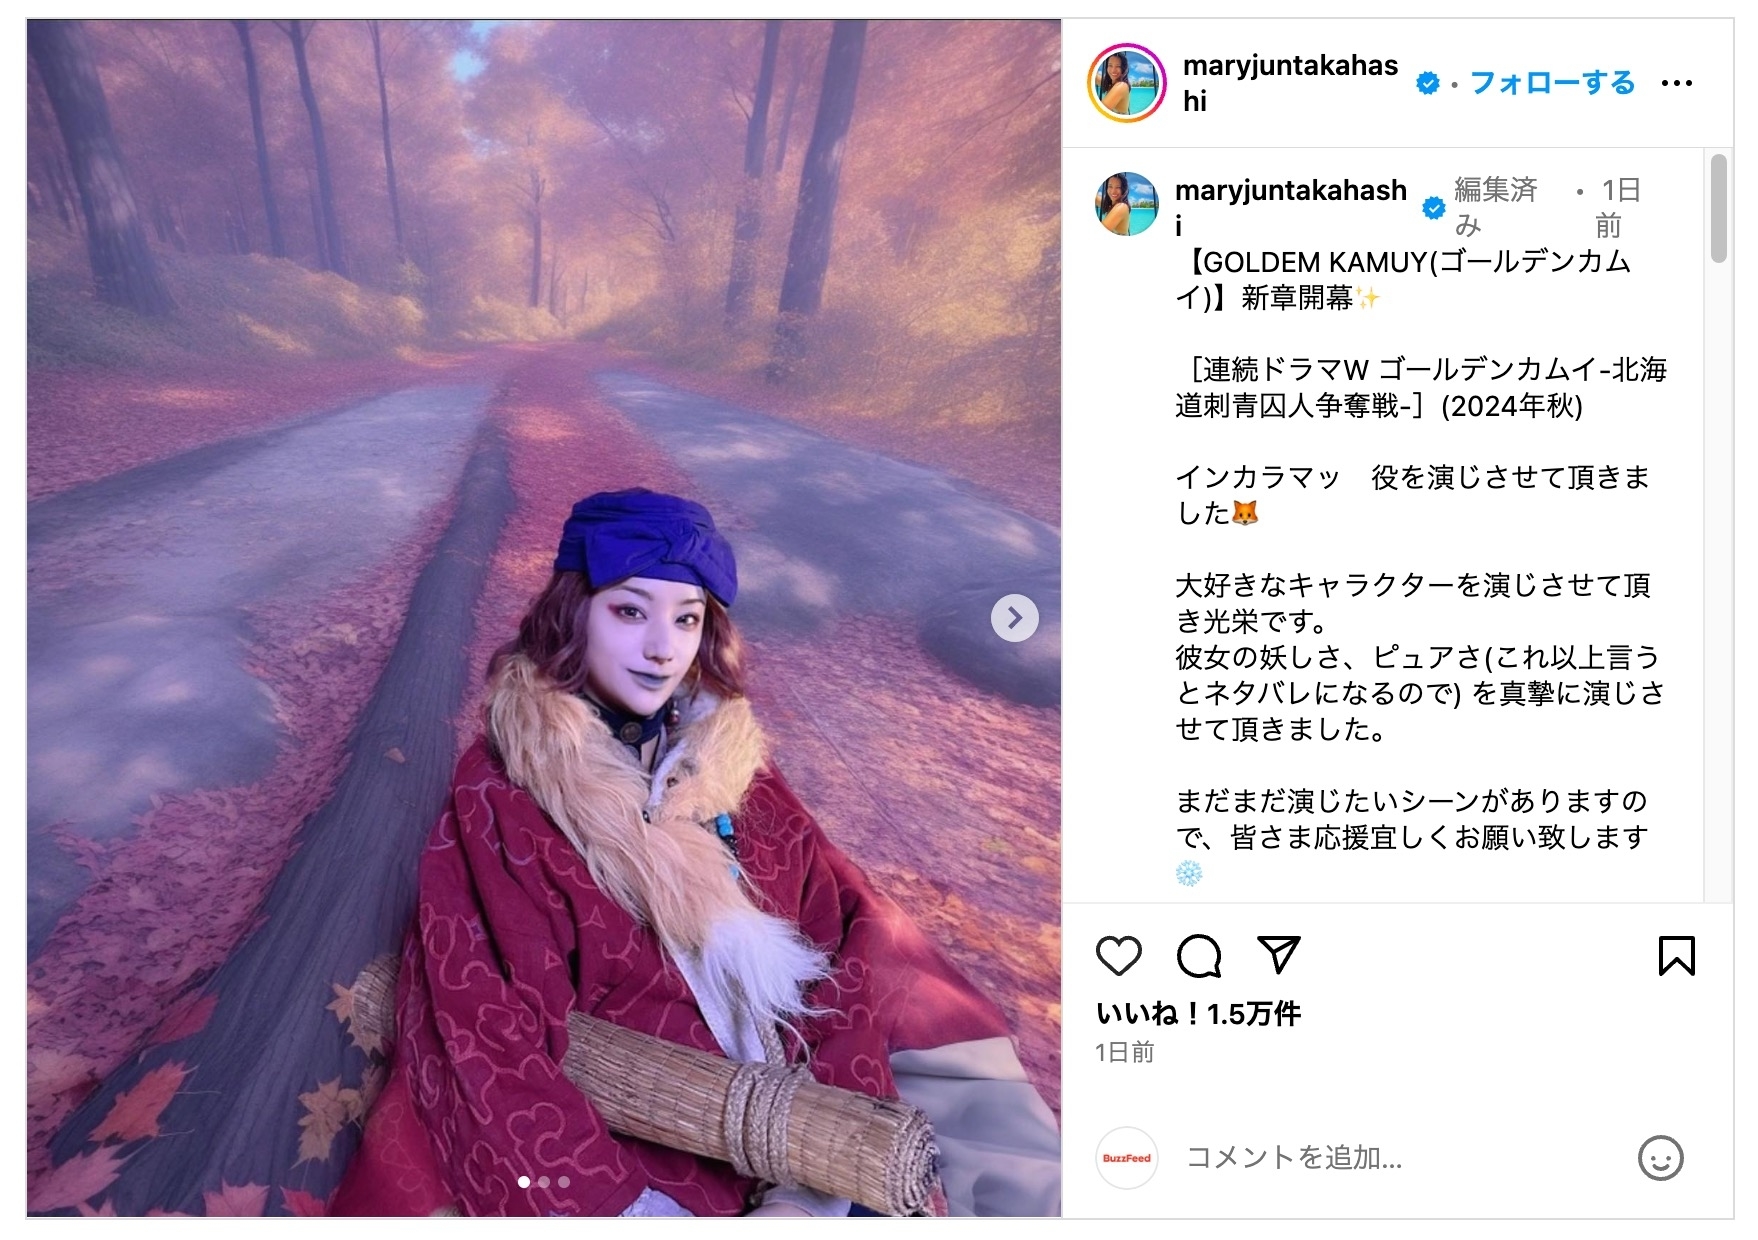 Instagramの投稿で、紫色の帽子と赤い衣装を着た女性が秋の木々の間を歩いています。